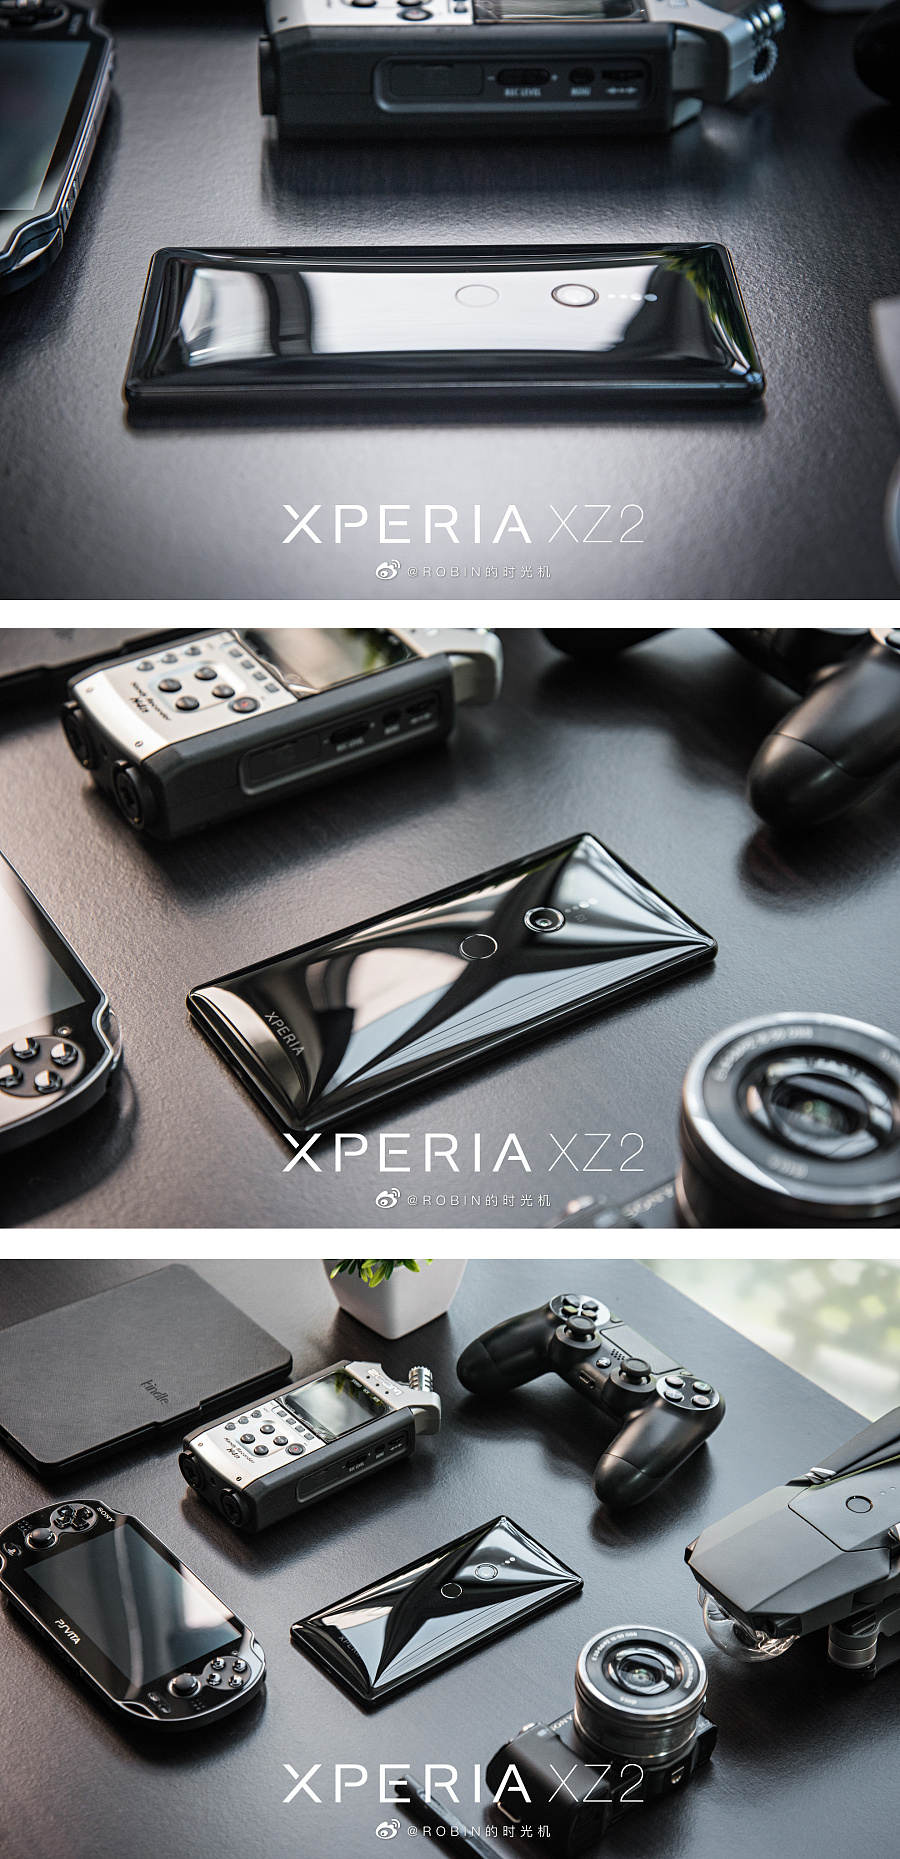 原创作品:产品摄影 | 索尼 Xperia XZ2 手机图赏